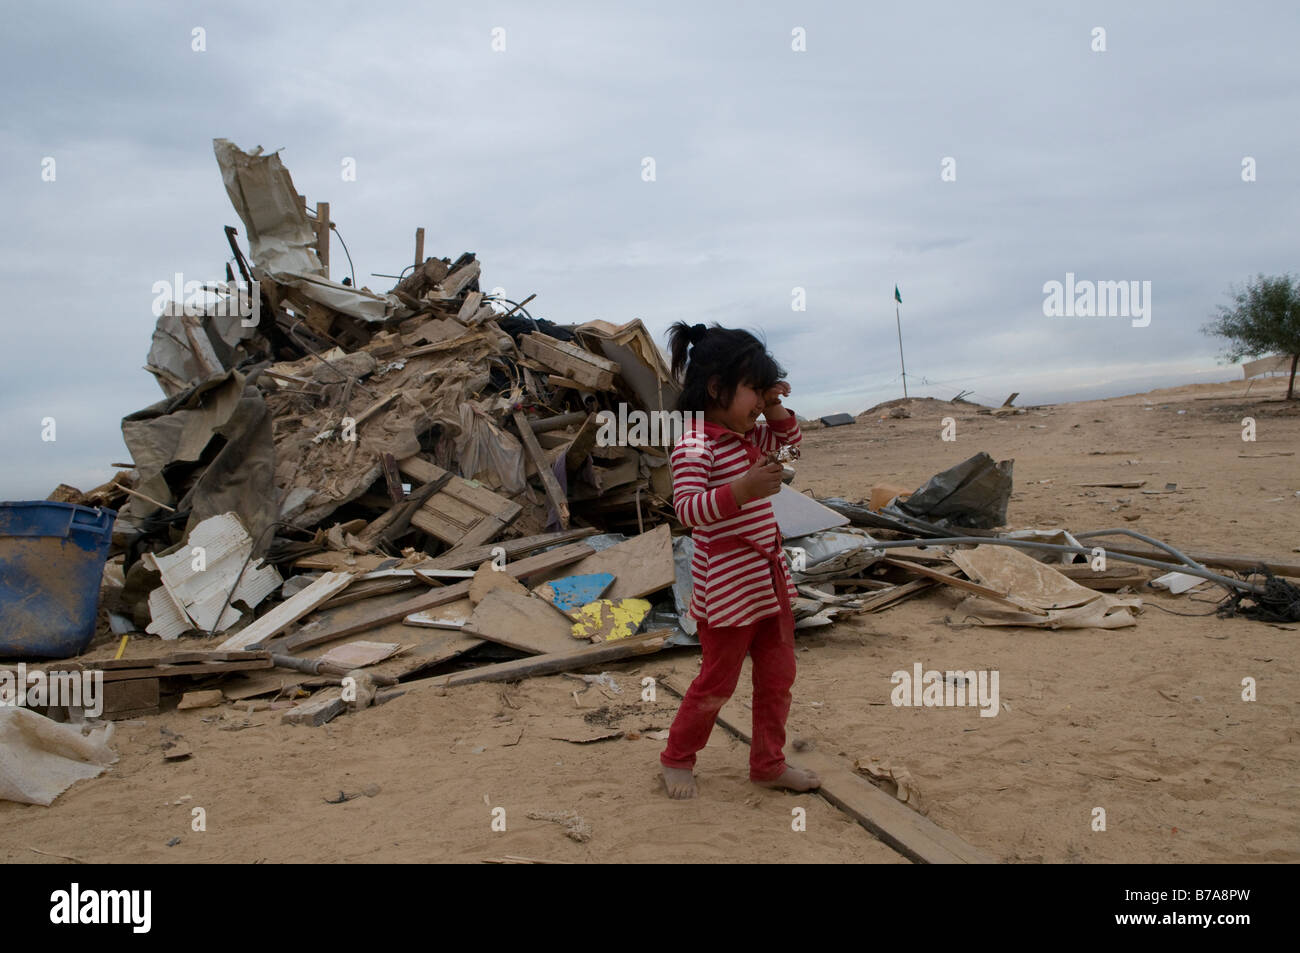 Au milieu des cris de fille bédouine ruine de démoli la maison rasée par les autorités israéliennes à Abdallah Al Atrash village bédouin non reconnu dans le désert du Néguev, Israël Banque D'Images